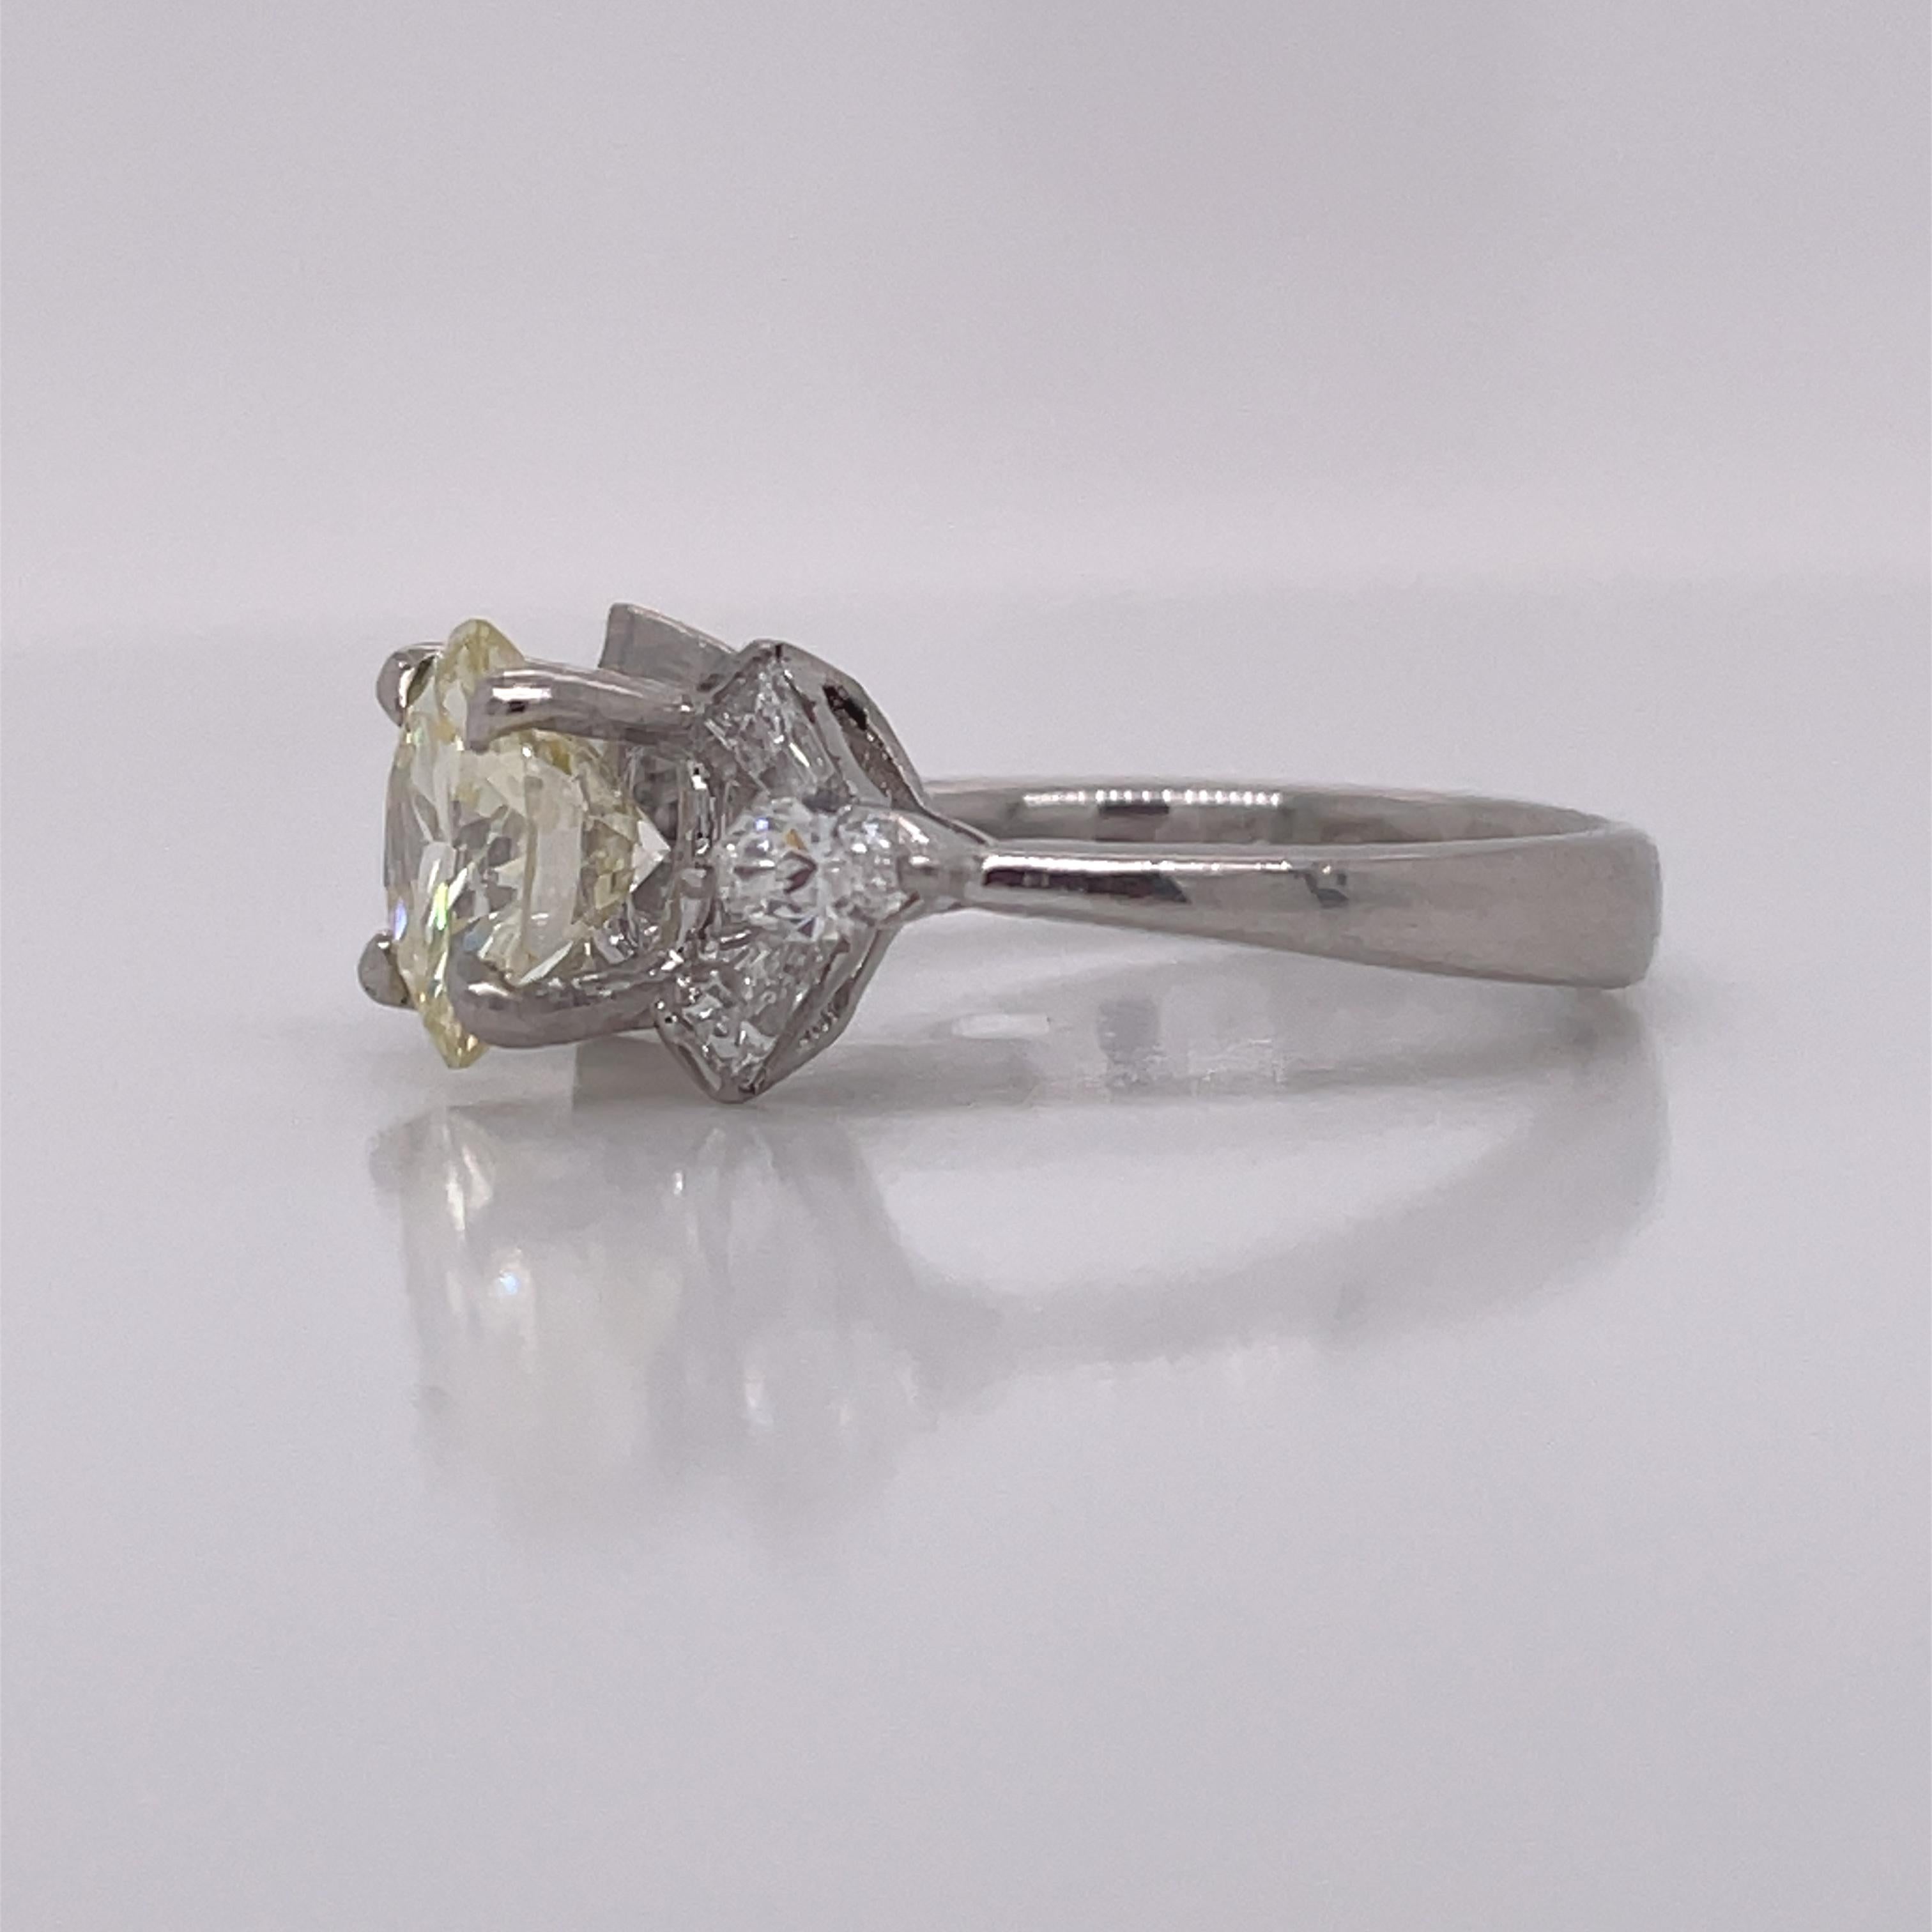 Dies ist ein schöner Platin-Diamantenring aus den 1950er Jahren mit wunderschönen konisch zulaufenden Baguettes und Diamanten im Marquiseschliff! Es ist schwer, sich nicht in diesen atemberaubenden Ring zu verlieben! Von ihrem herrlichen 1,75ct